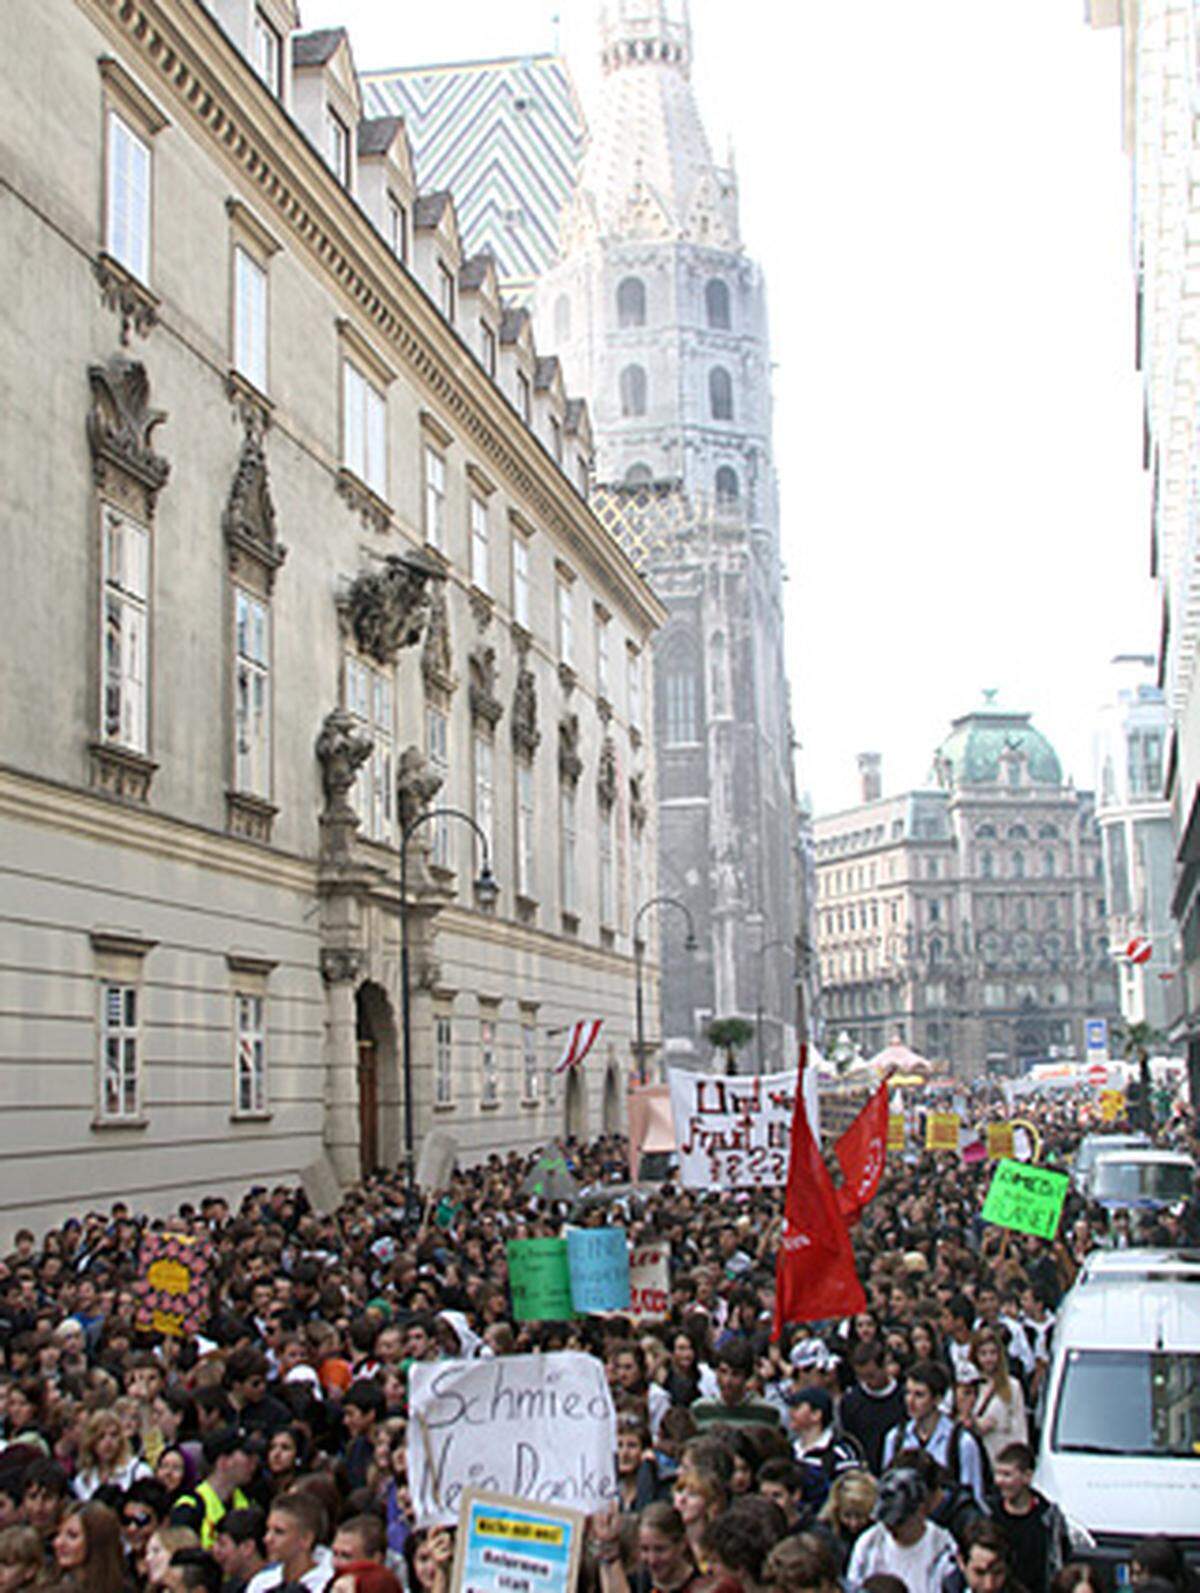 Aufgerufen zum Schülerstreik bzw. zur City-Demo hatten unter anderem die SP-nahe Aktion Kritischer Schüler (AKS), die Sozialistische Jugend Österreichs sowie die linke Jugendorganisation "Revolution".